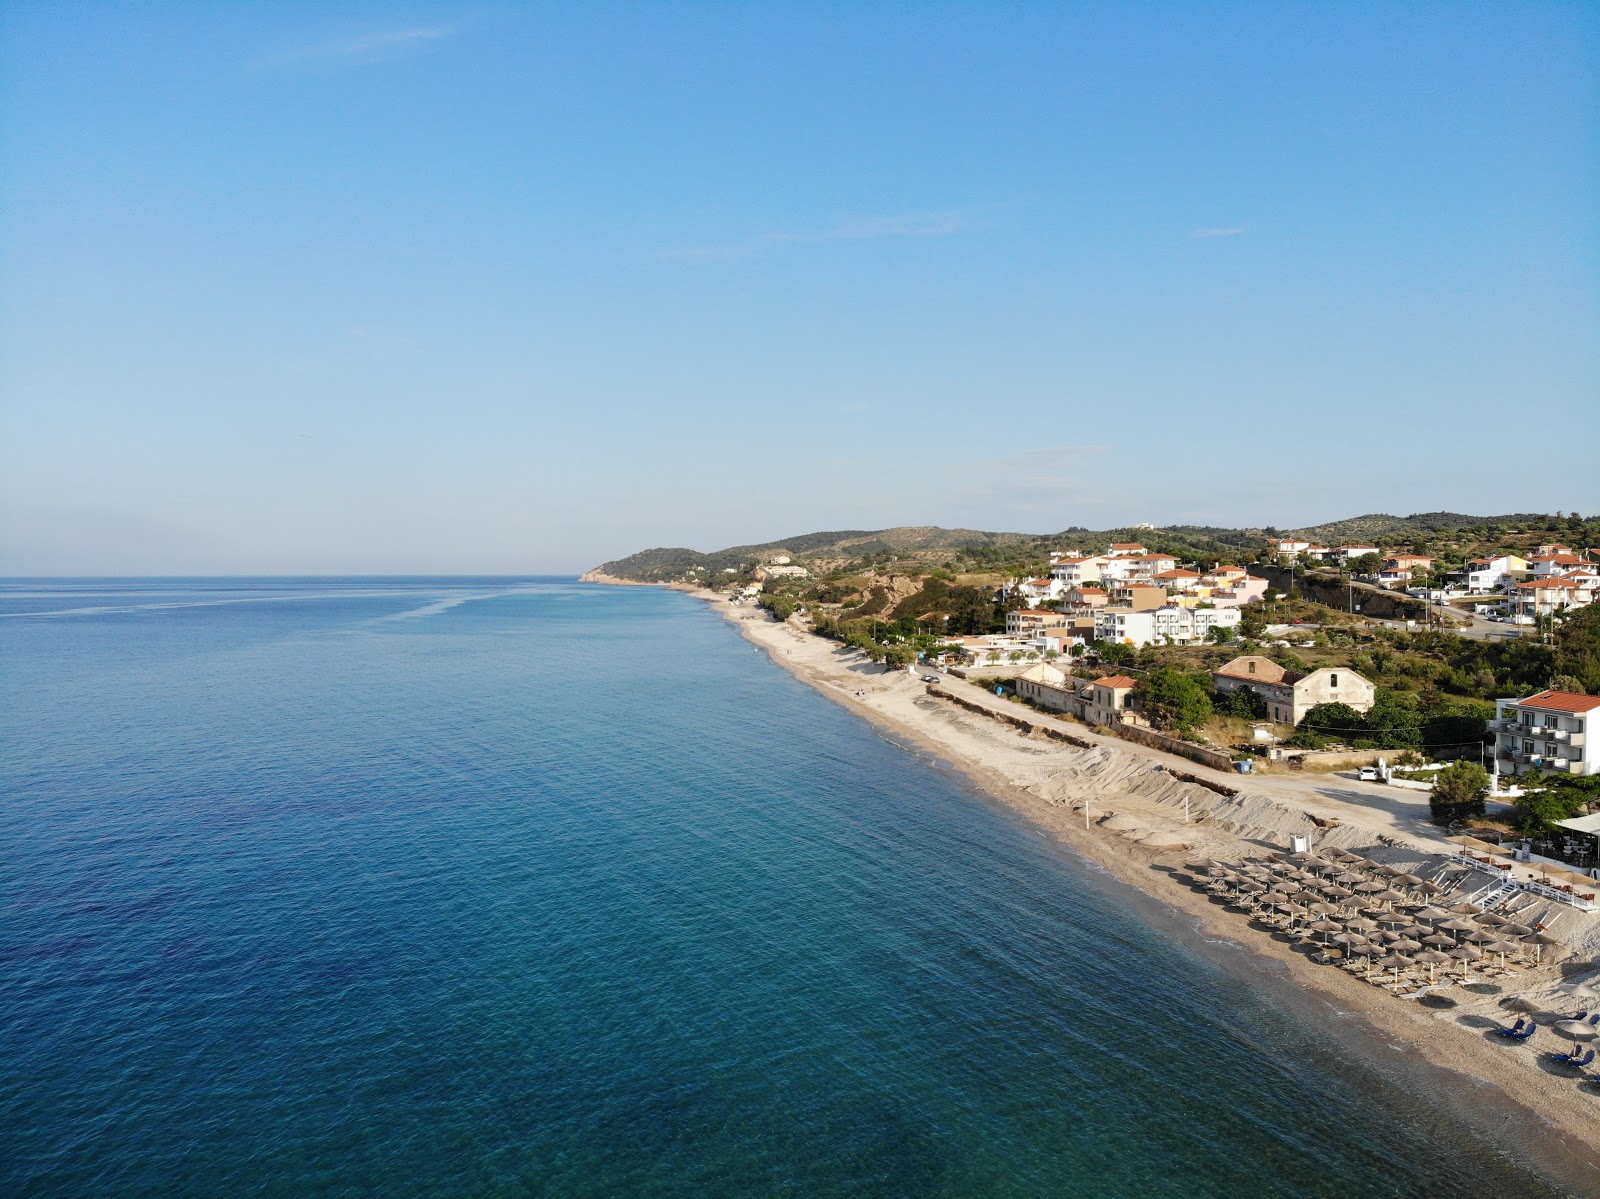 Foto de Aegean beach - lugar popular entre los conocedores del relax